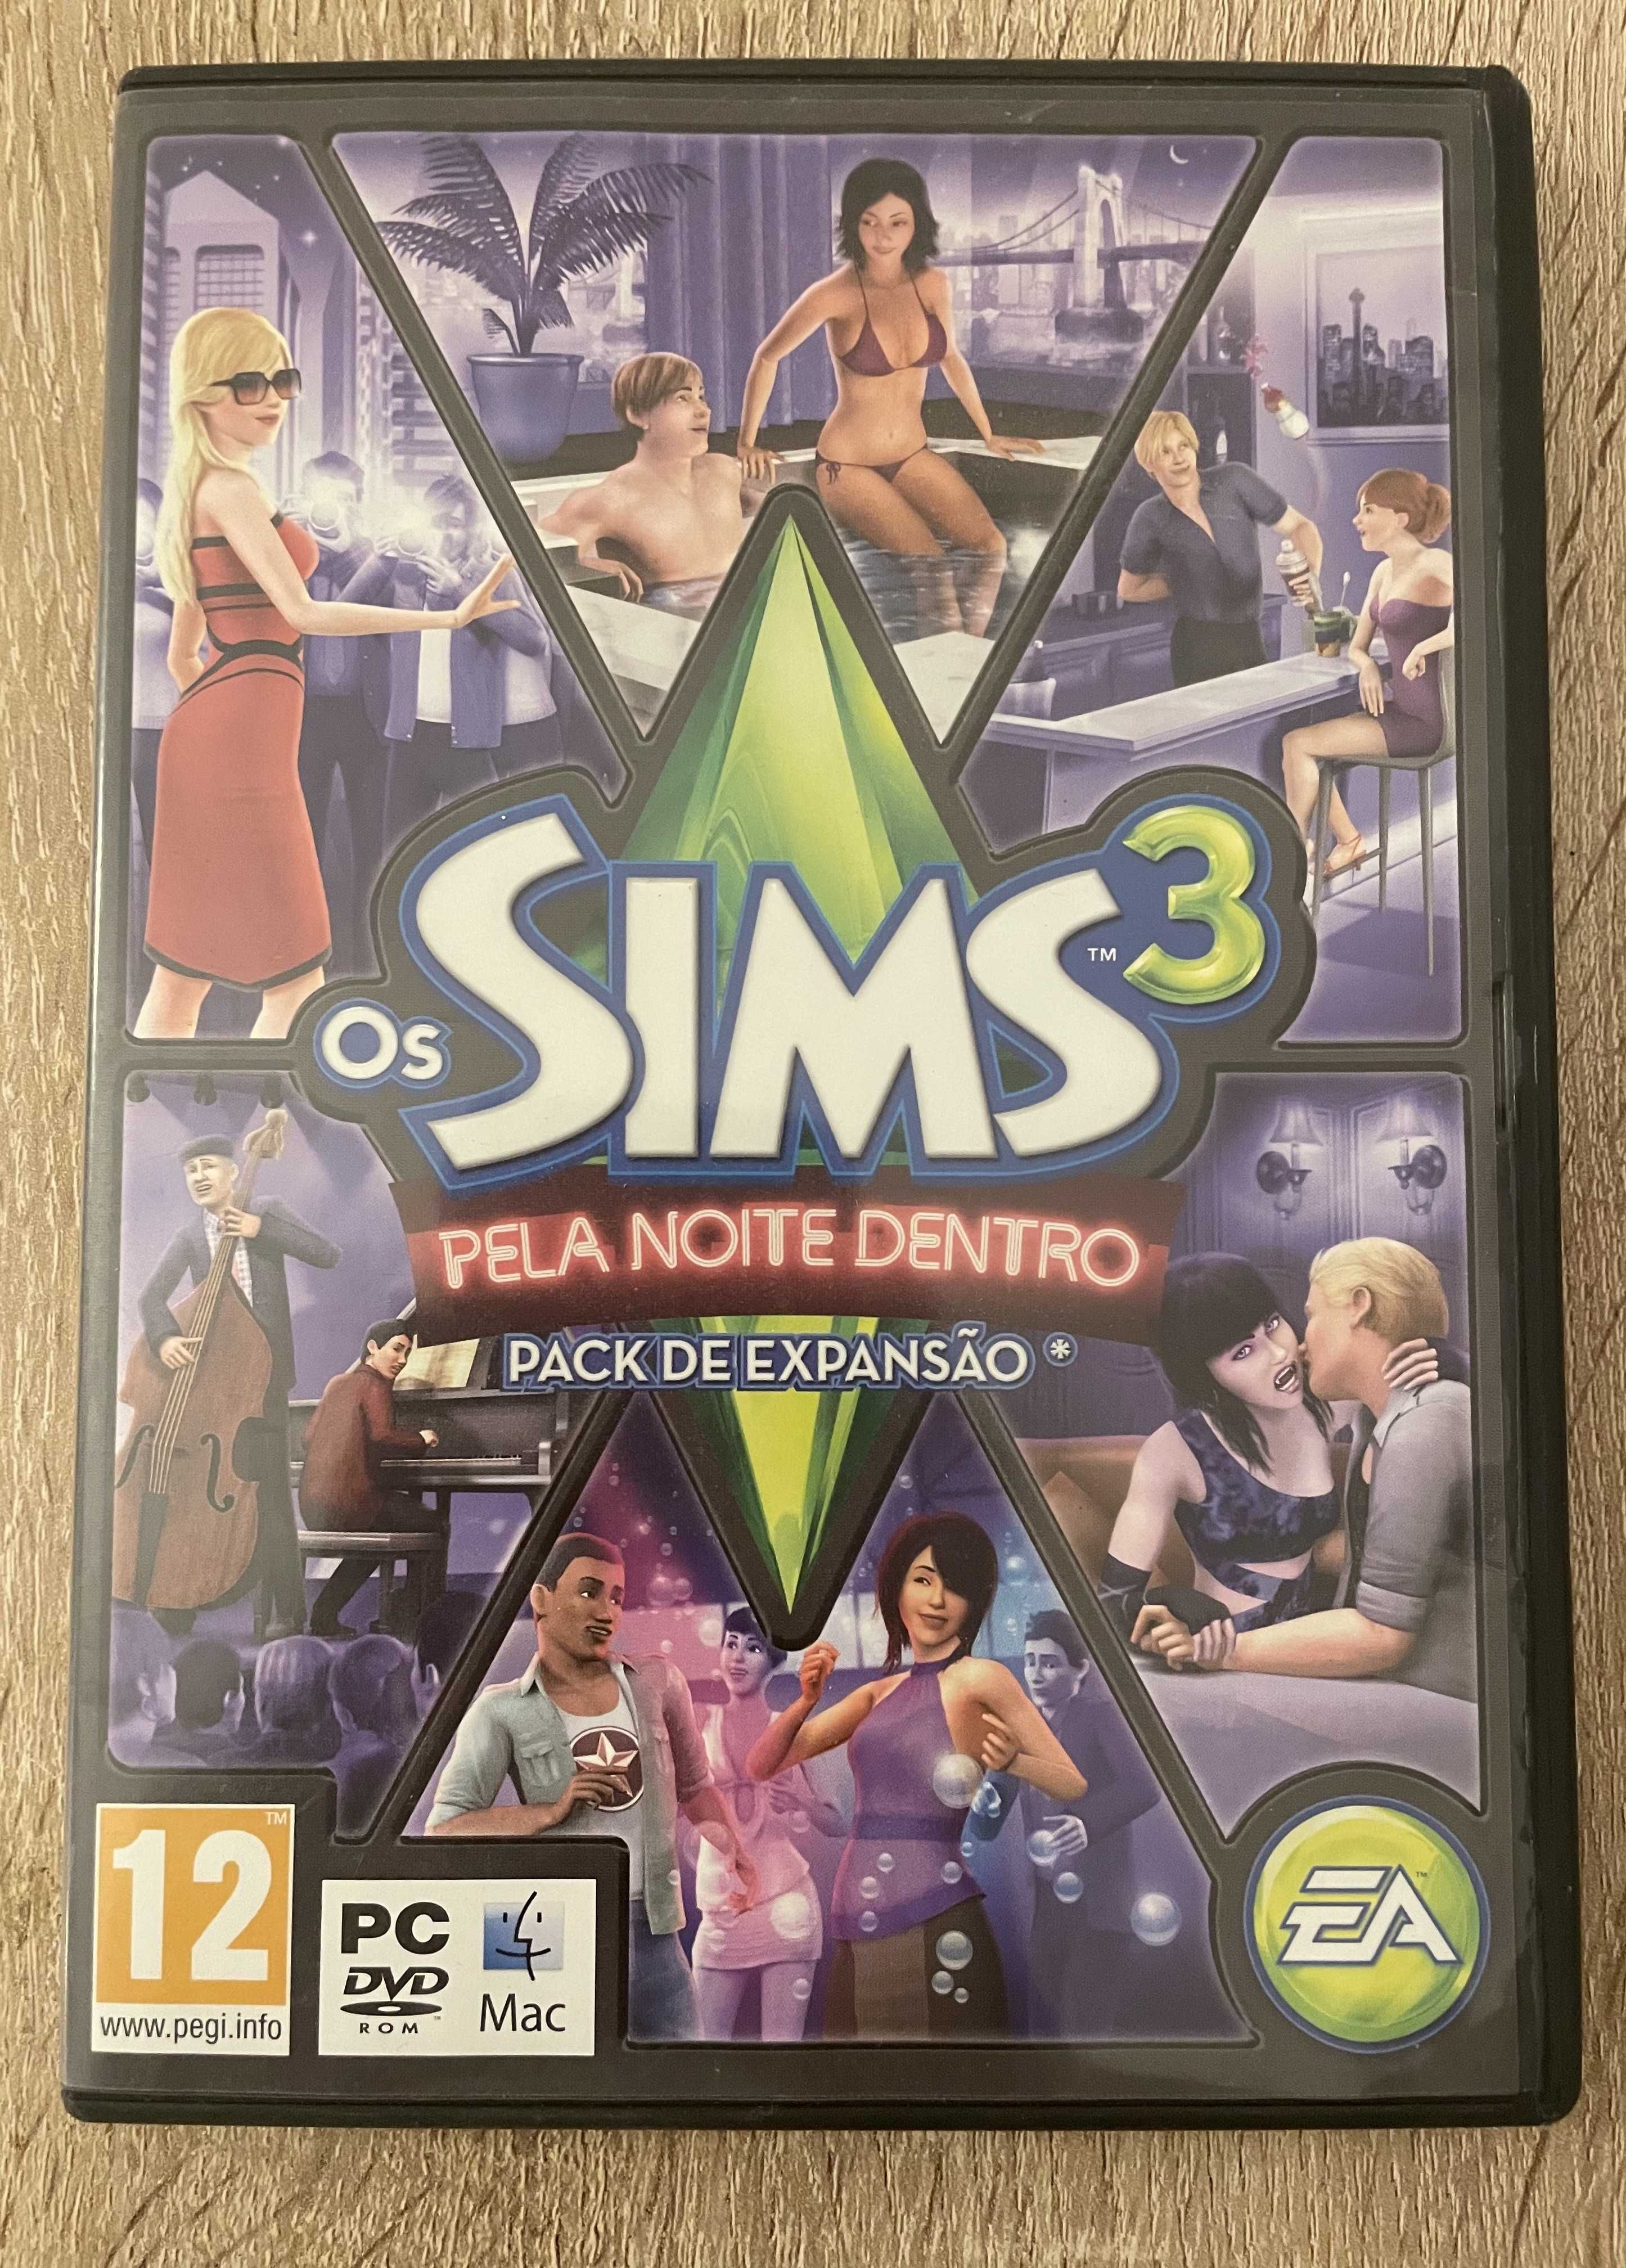 Jogo "Os Sims 3 - Pela Noite Dentro"